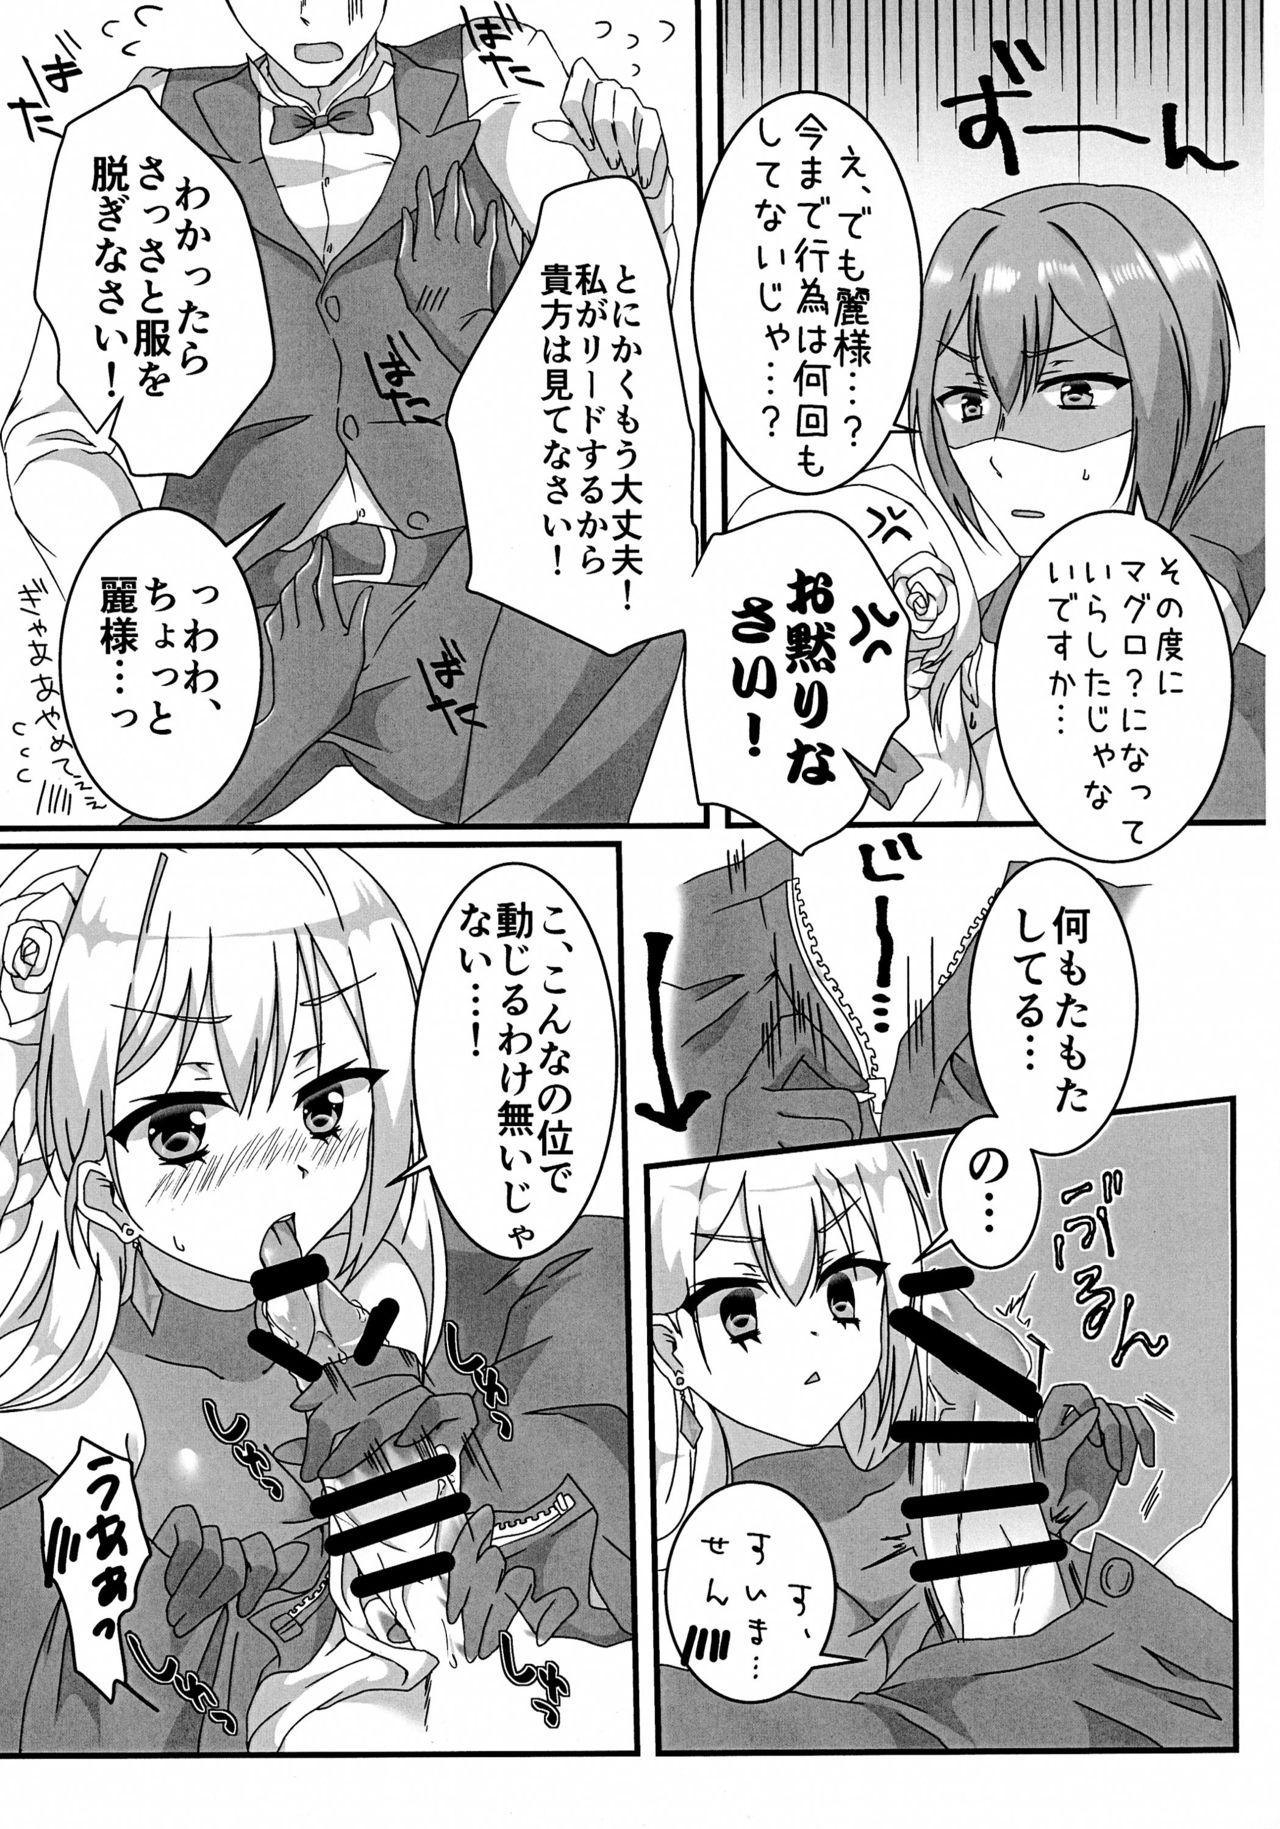 Blowing Ecchi na Ojou-sama wa suki desu ka? - Hidan no aria Nipple - Page 7